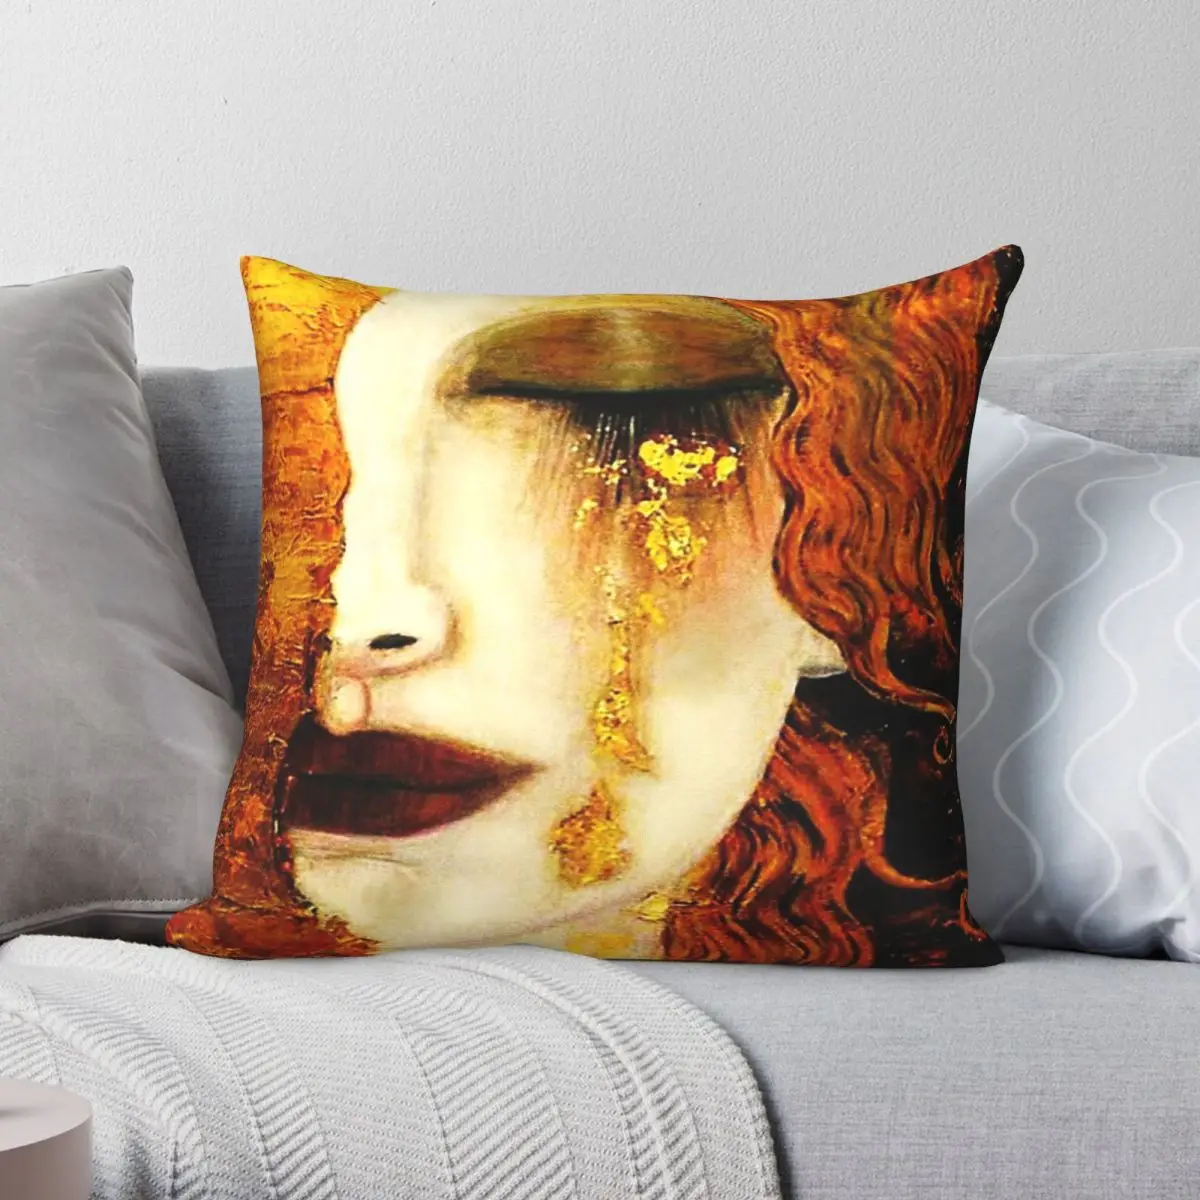 

Gustav Klimt Golden Tears Pillowcase Polyester Linen Velvet Pattern Zip Decor Pillow Case Home Cushion Cover 18"